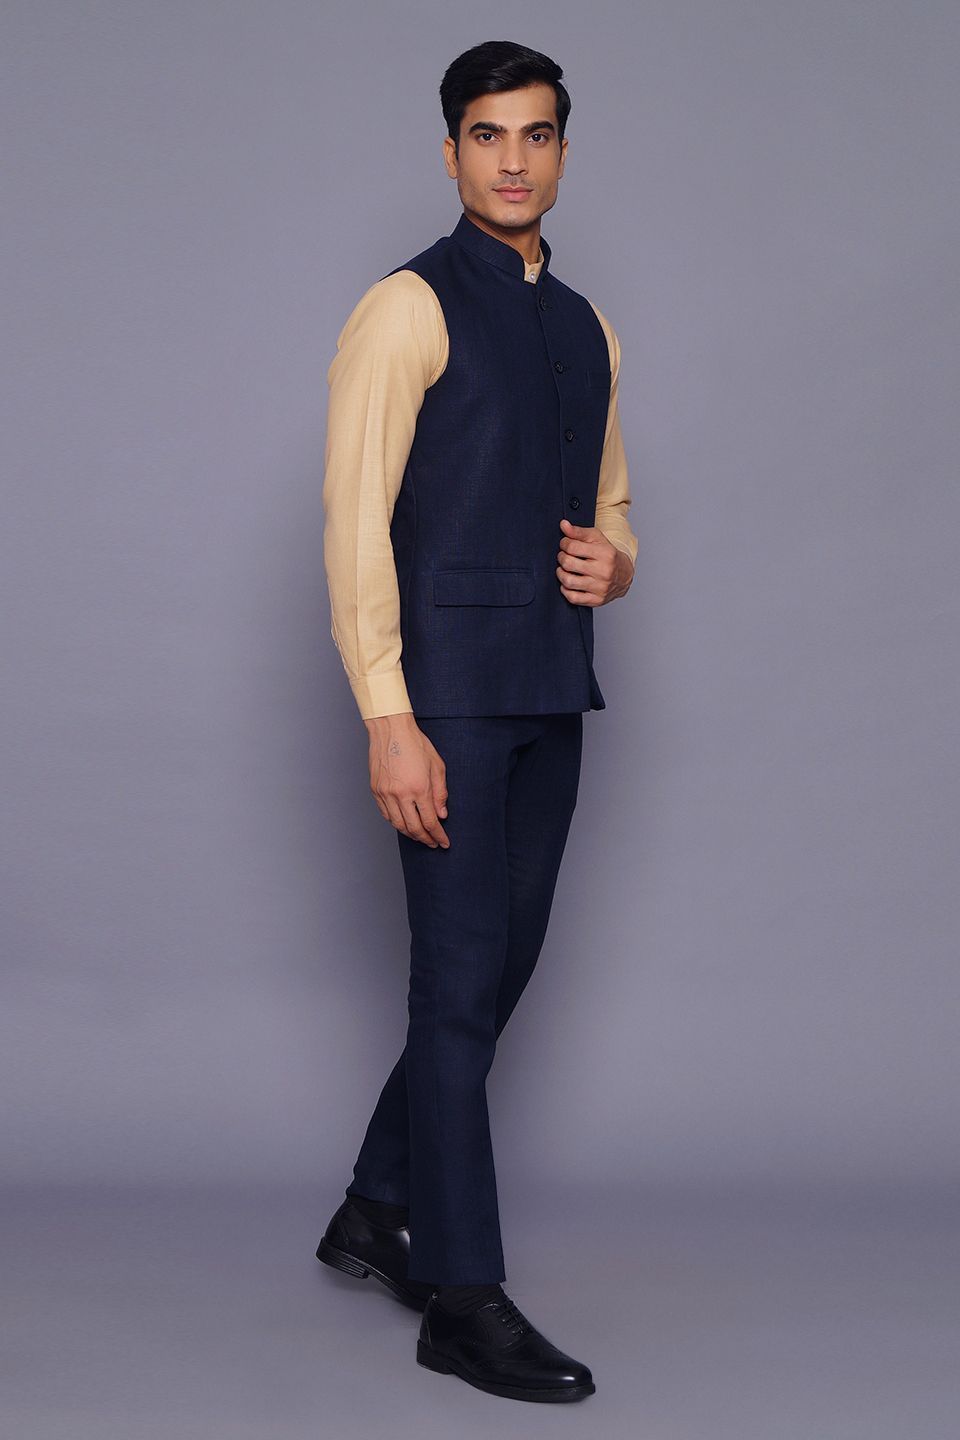 Wintage Men's Pure Linen  Vest & Pant Set: Blue